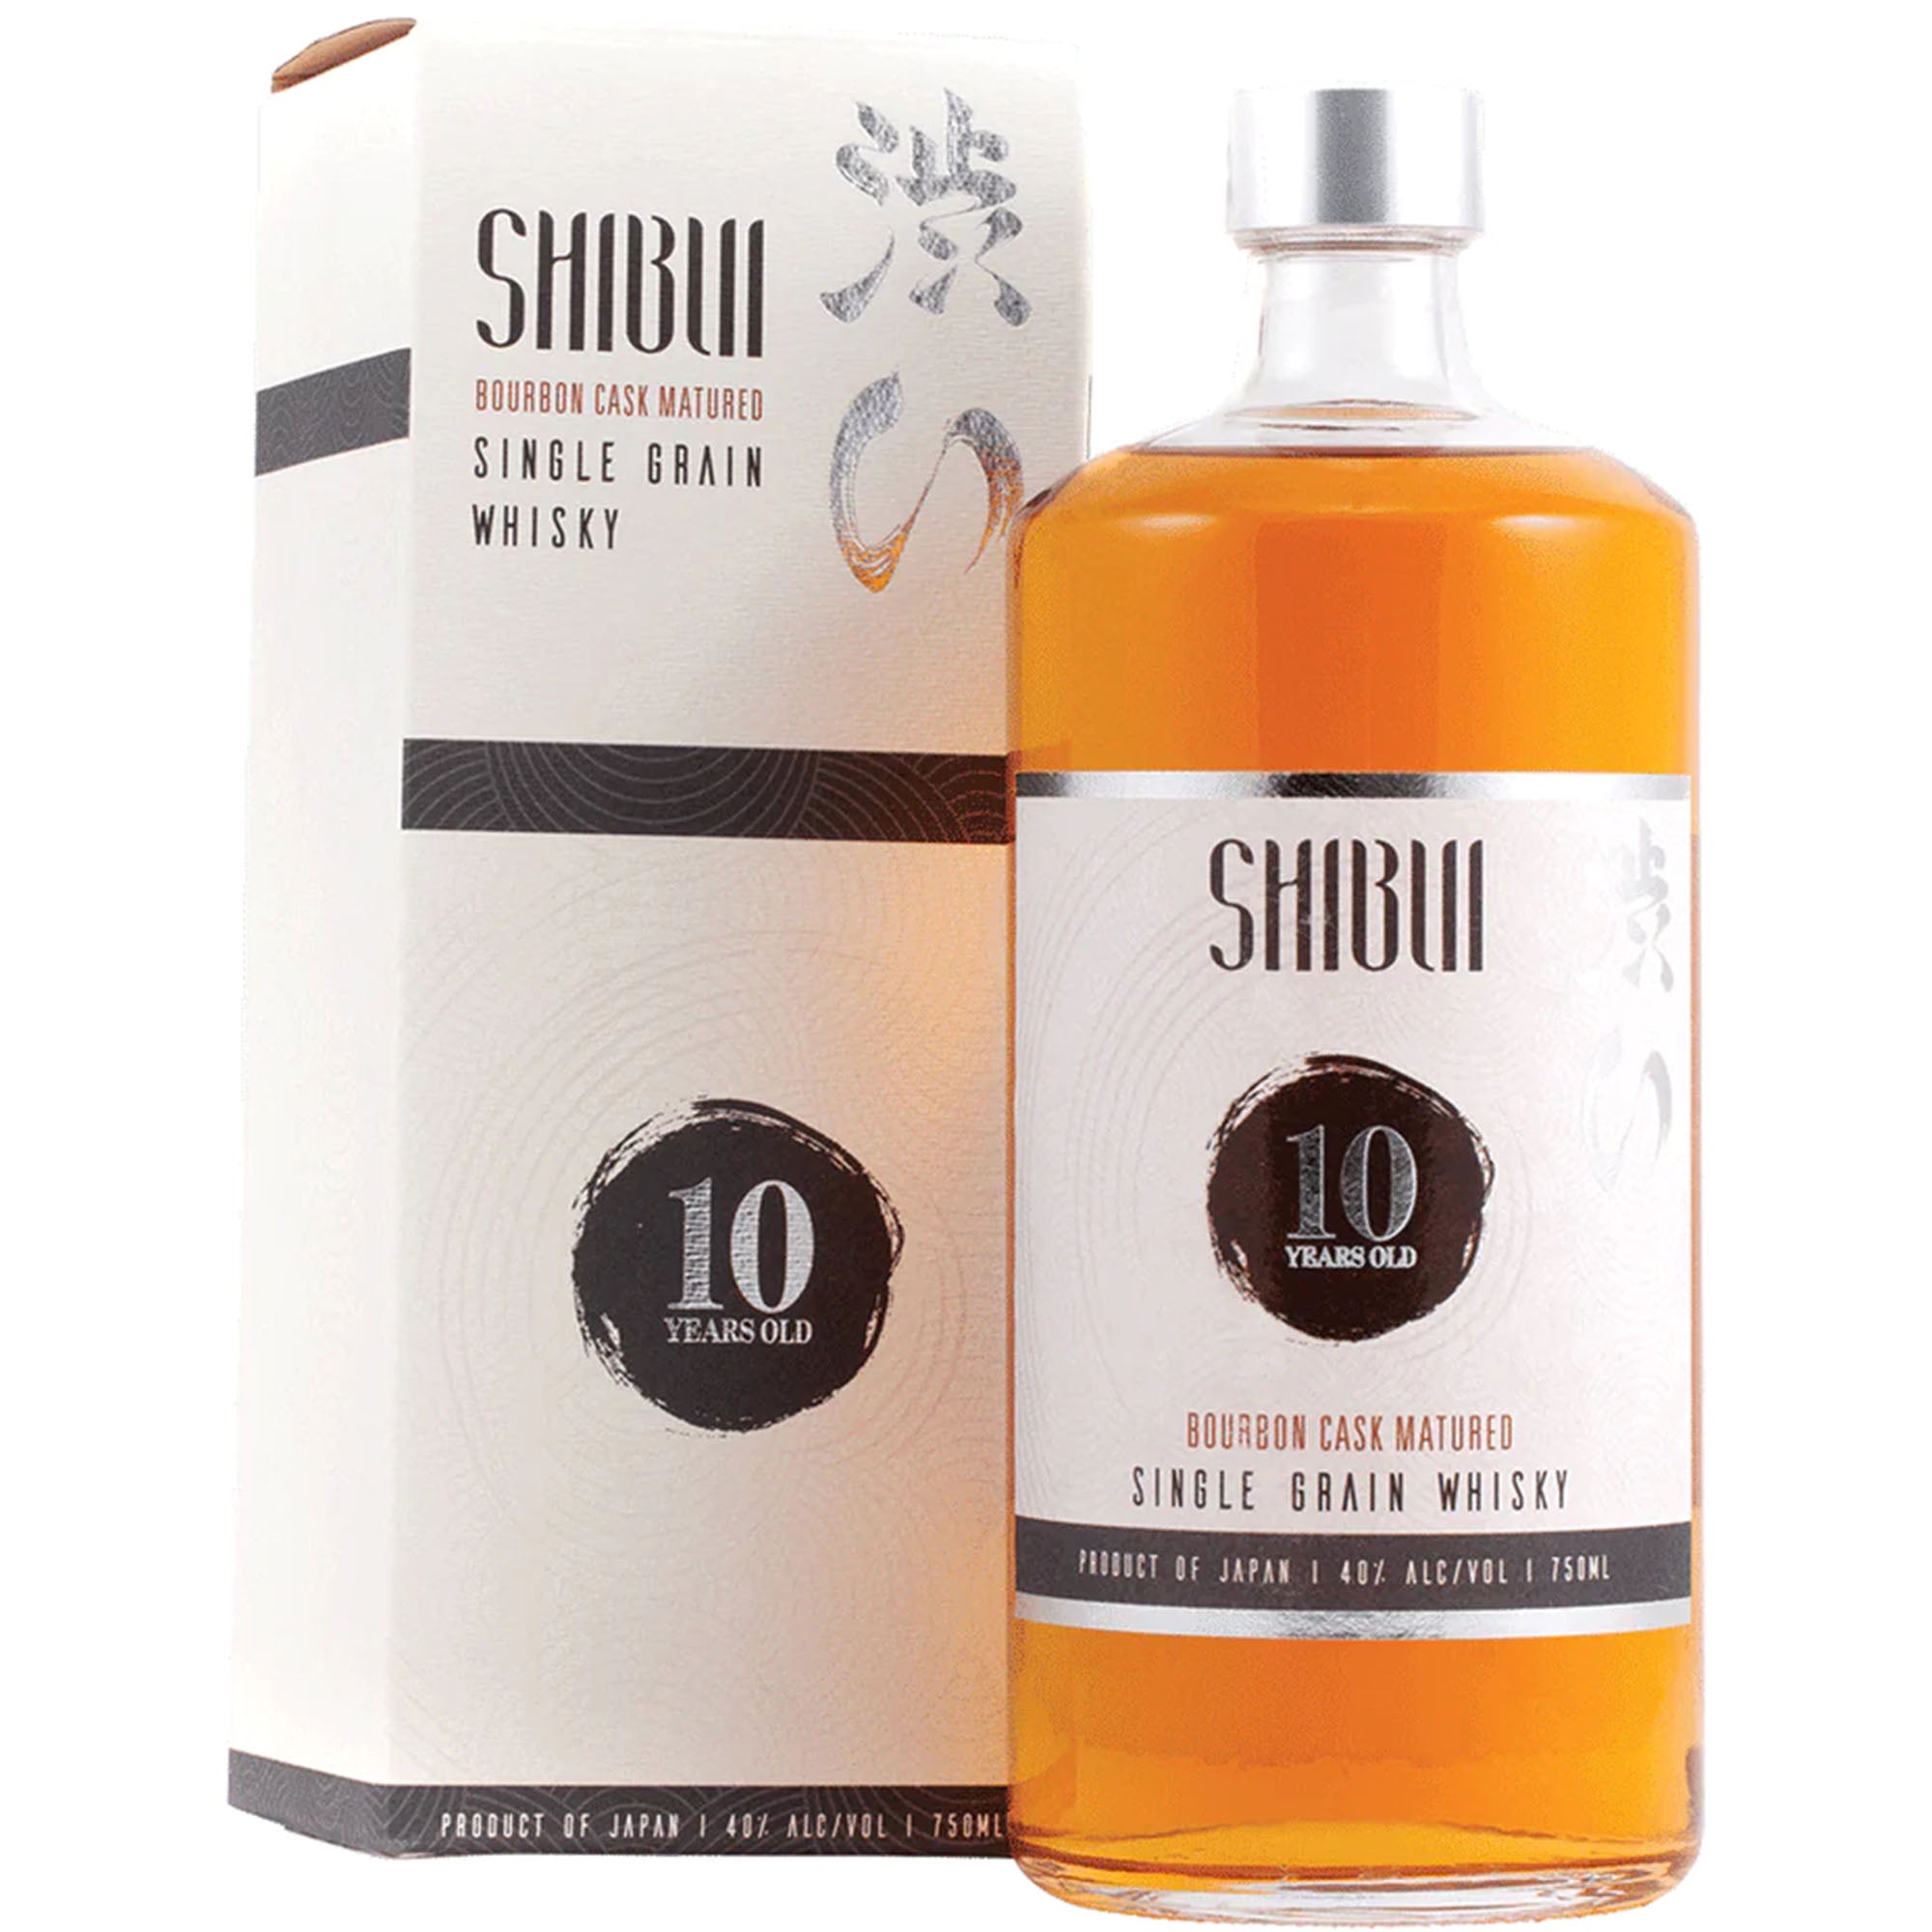 shibui 10 year bourbon cask matured